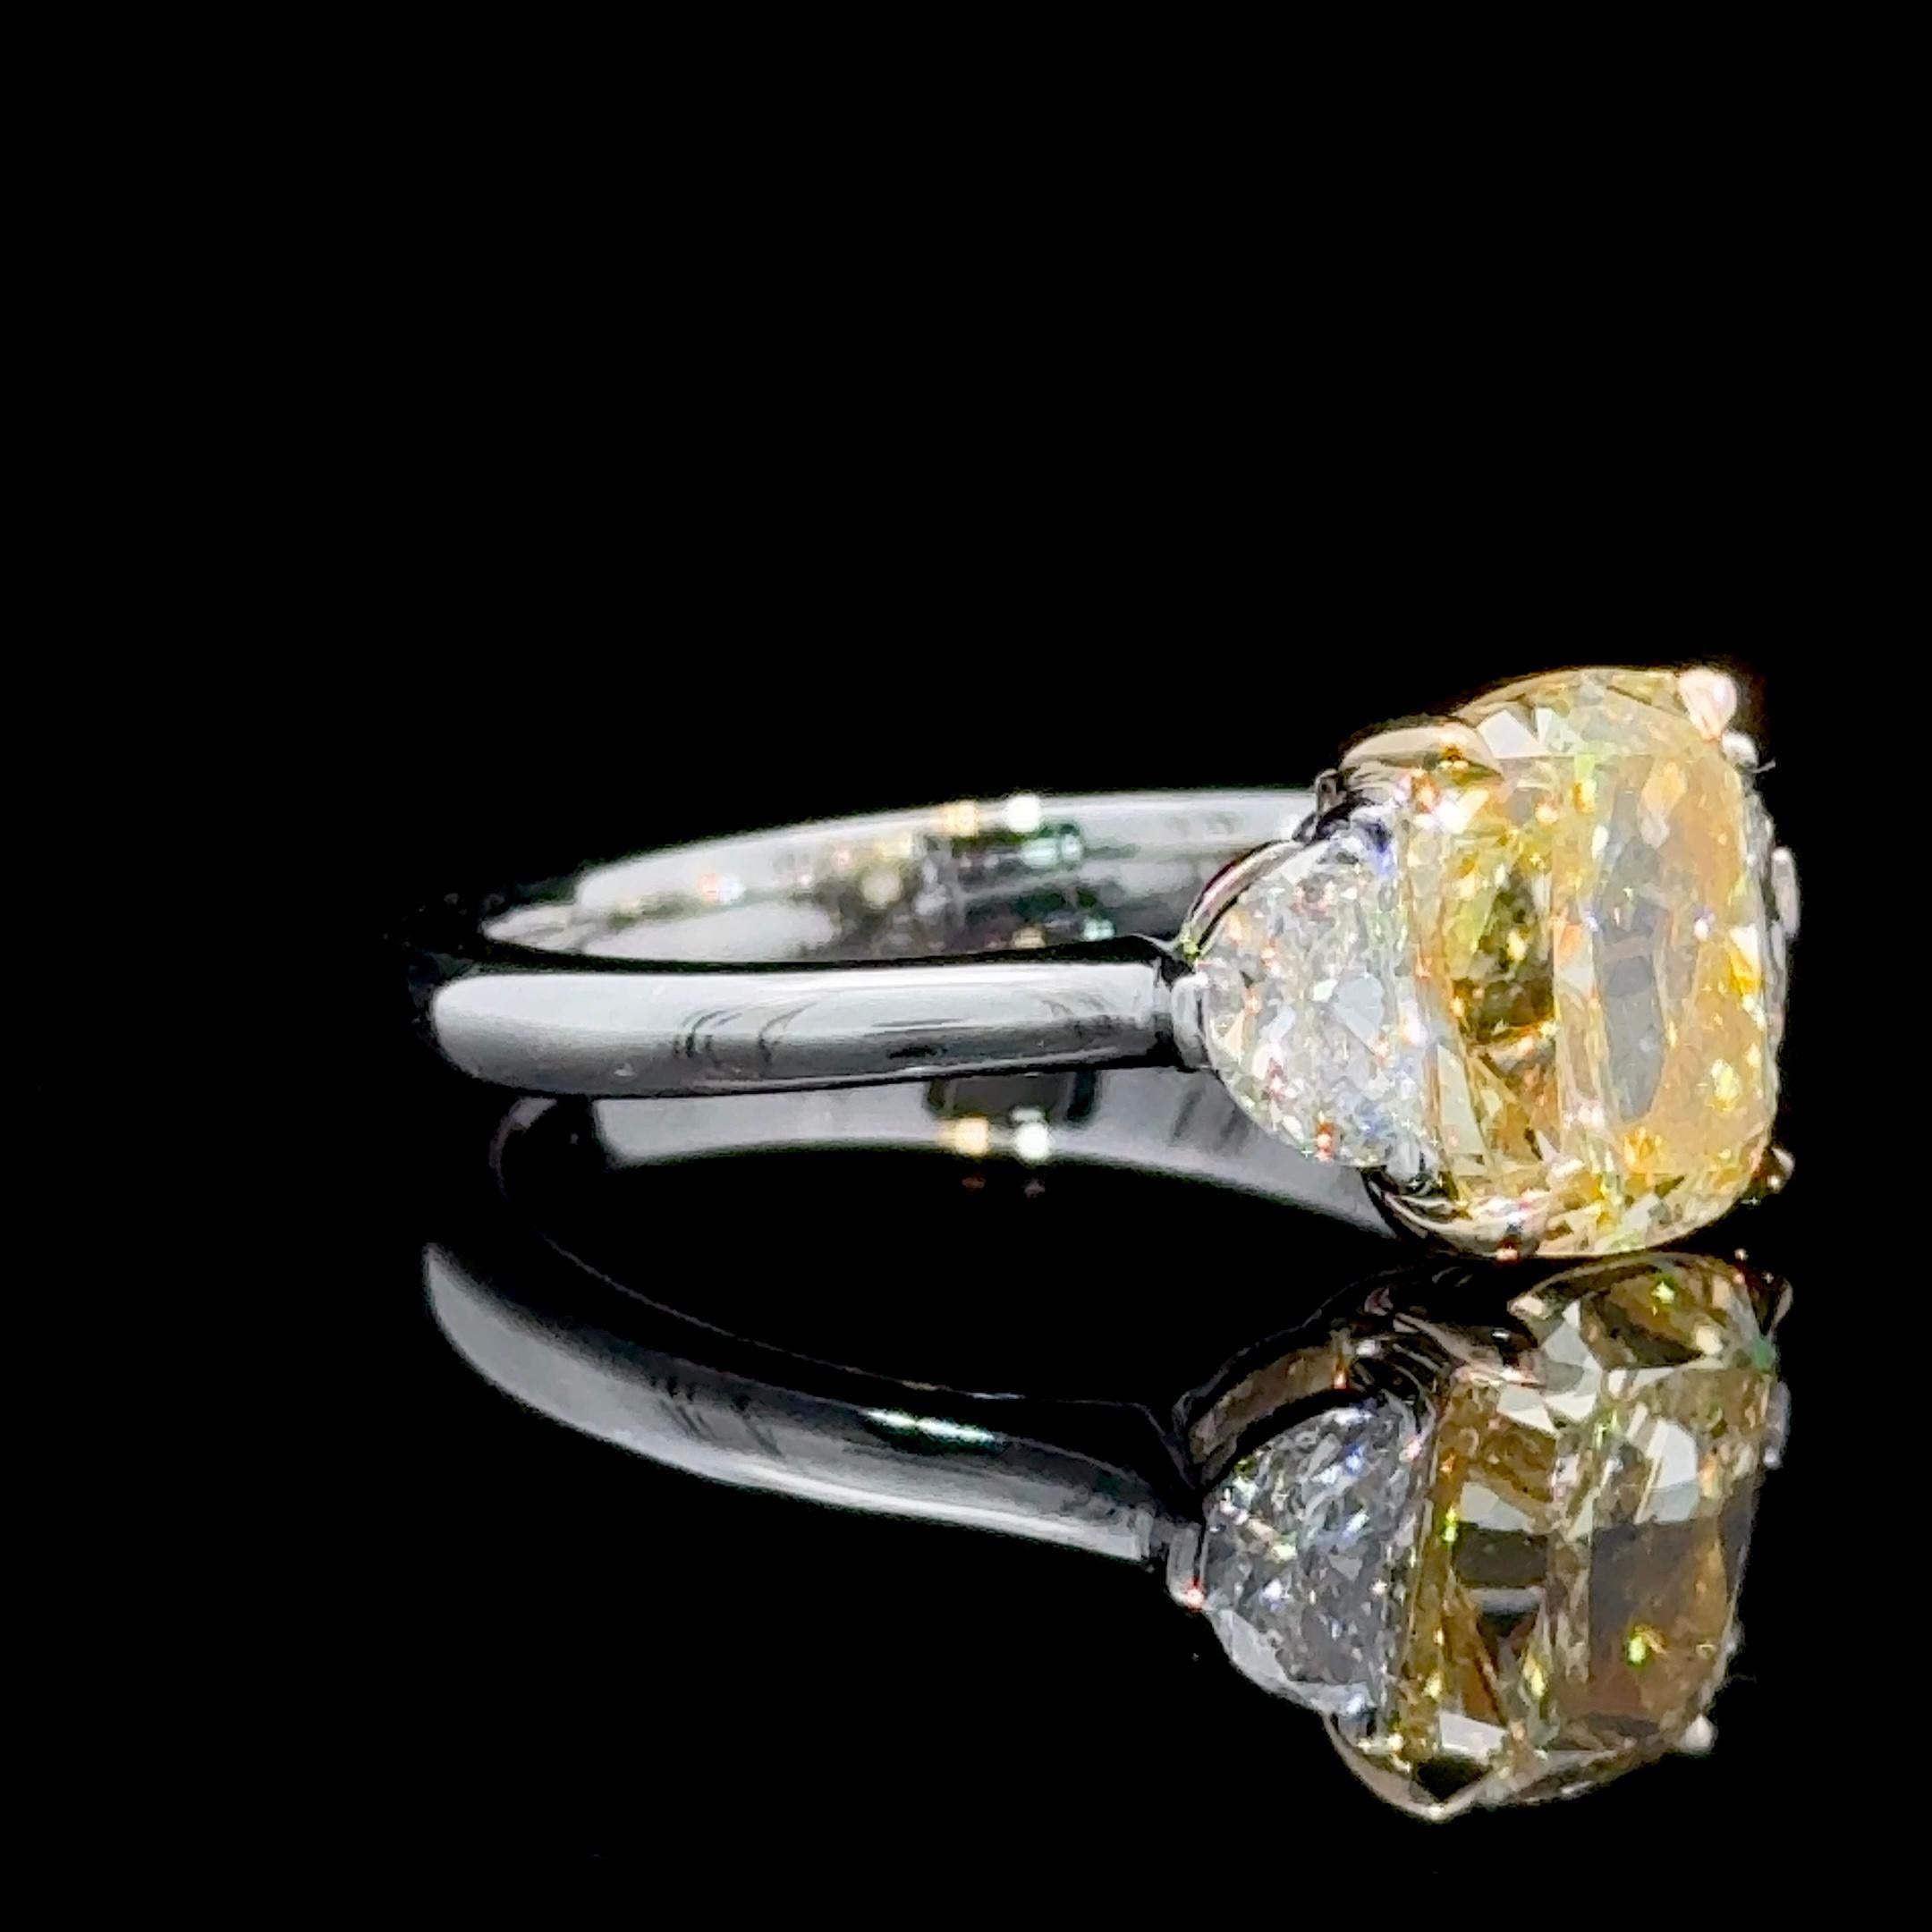 Unter den gelben Diamanten sind die länglichen Formen die begehrtesten Konturen für Kissen- und Strahlenschliffe.
Sie sehen größer aus, als es ihr Gewicht vermuten lässt, und sie sind wahre Schmuckstücke.

Ein GIA-zertifiziert 2,47 Karat Cushion Cut